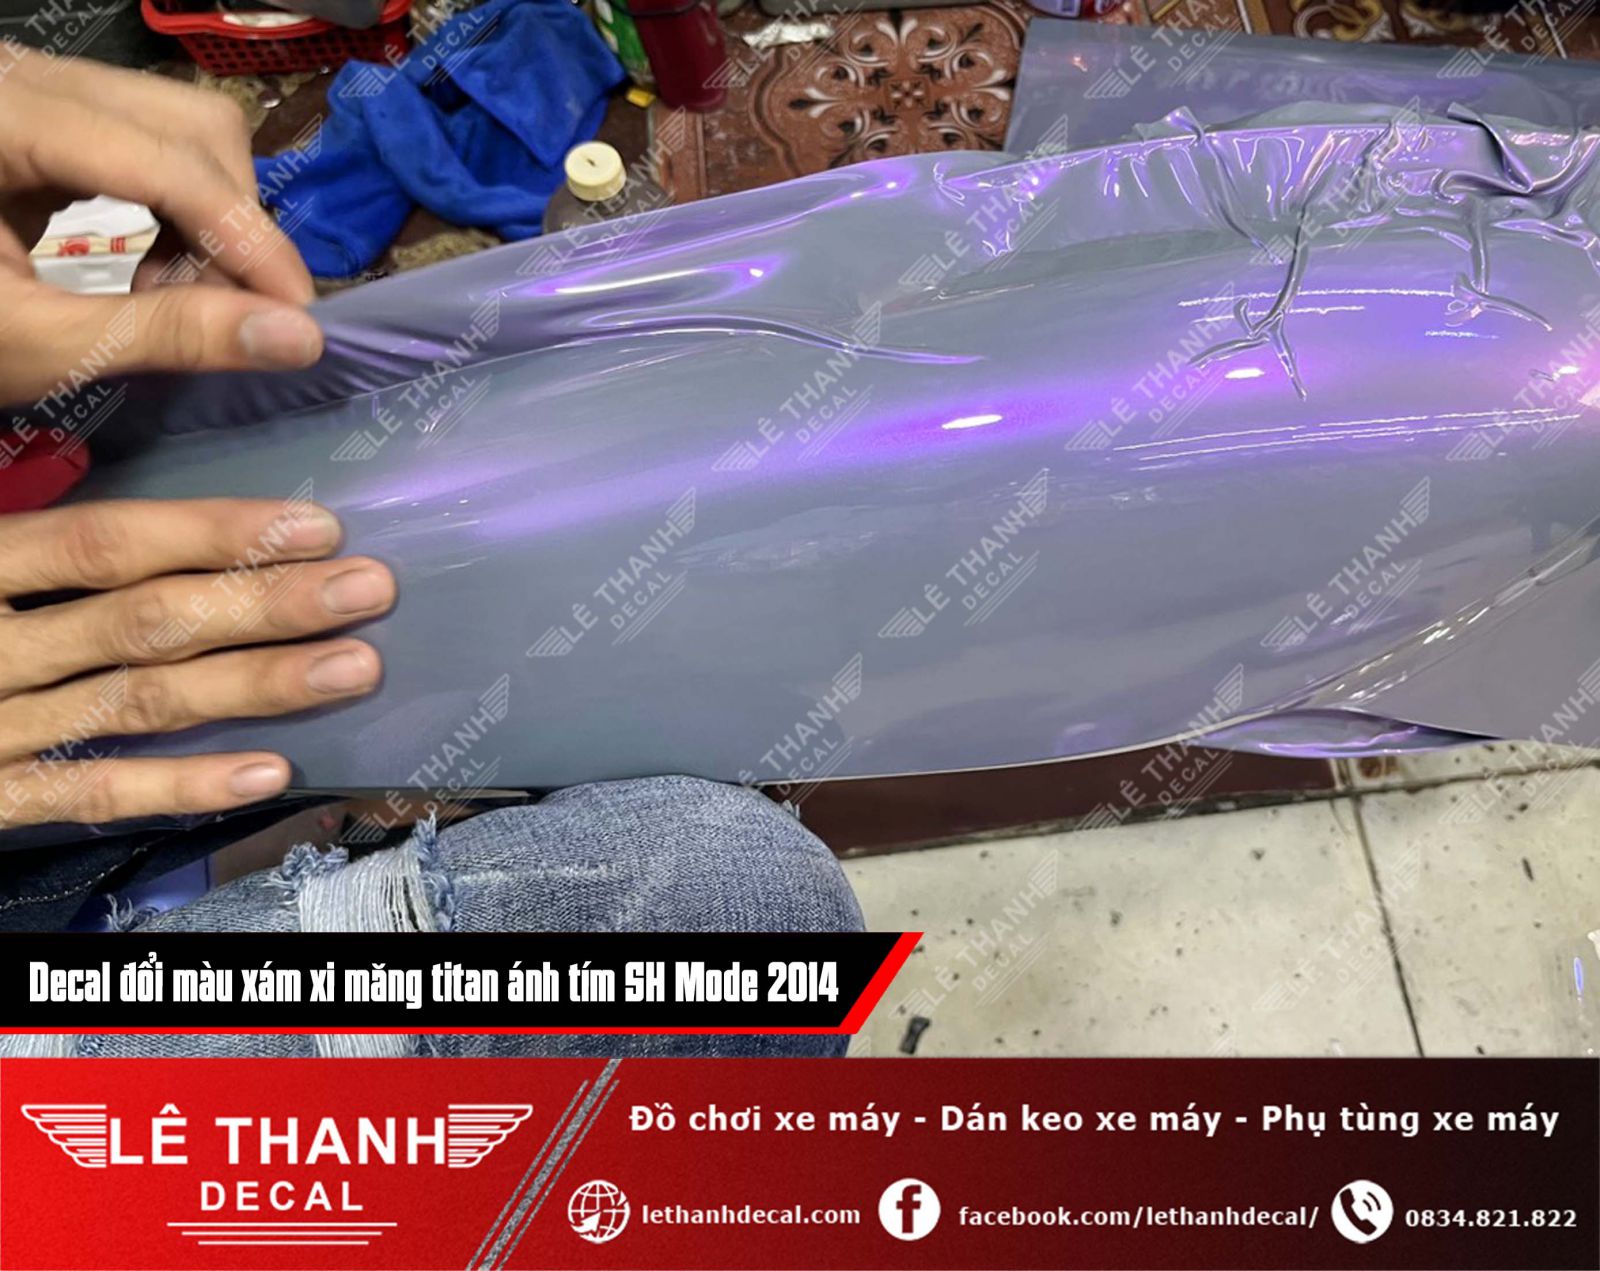 Dán decal đổi màu xám xi măng titan ánh tím cho SH Mode 2014